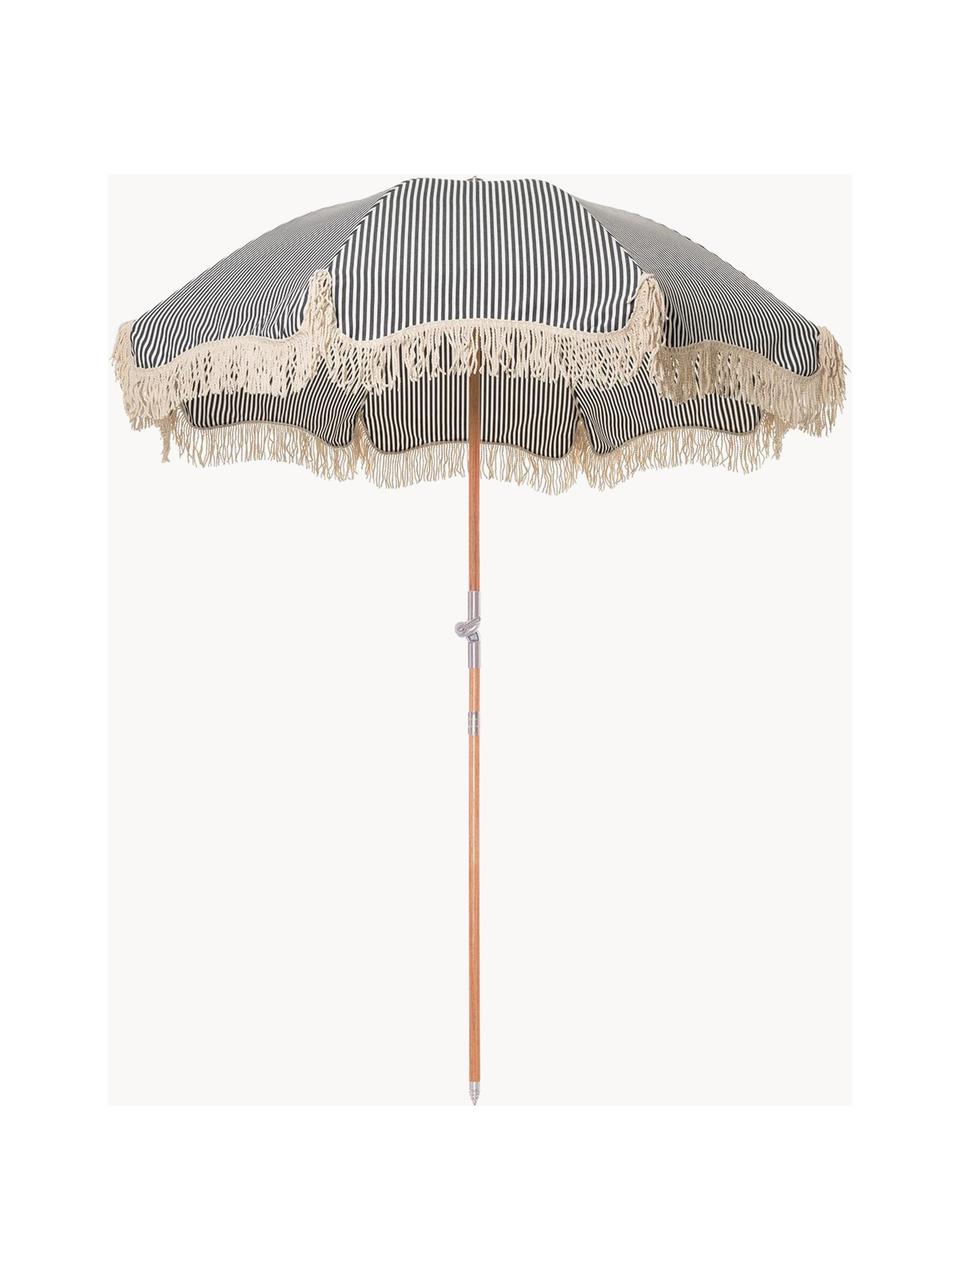 Parasol ogrodowy z frędzlami Retro, Ø 180 cm, Stelaż: drewno naturalne, laminow, Ciemny niebieski, kremowobiały, Ø 180 x W 230 cm